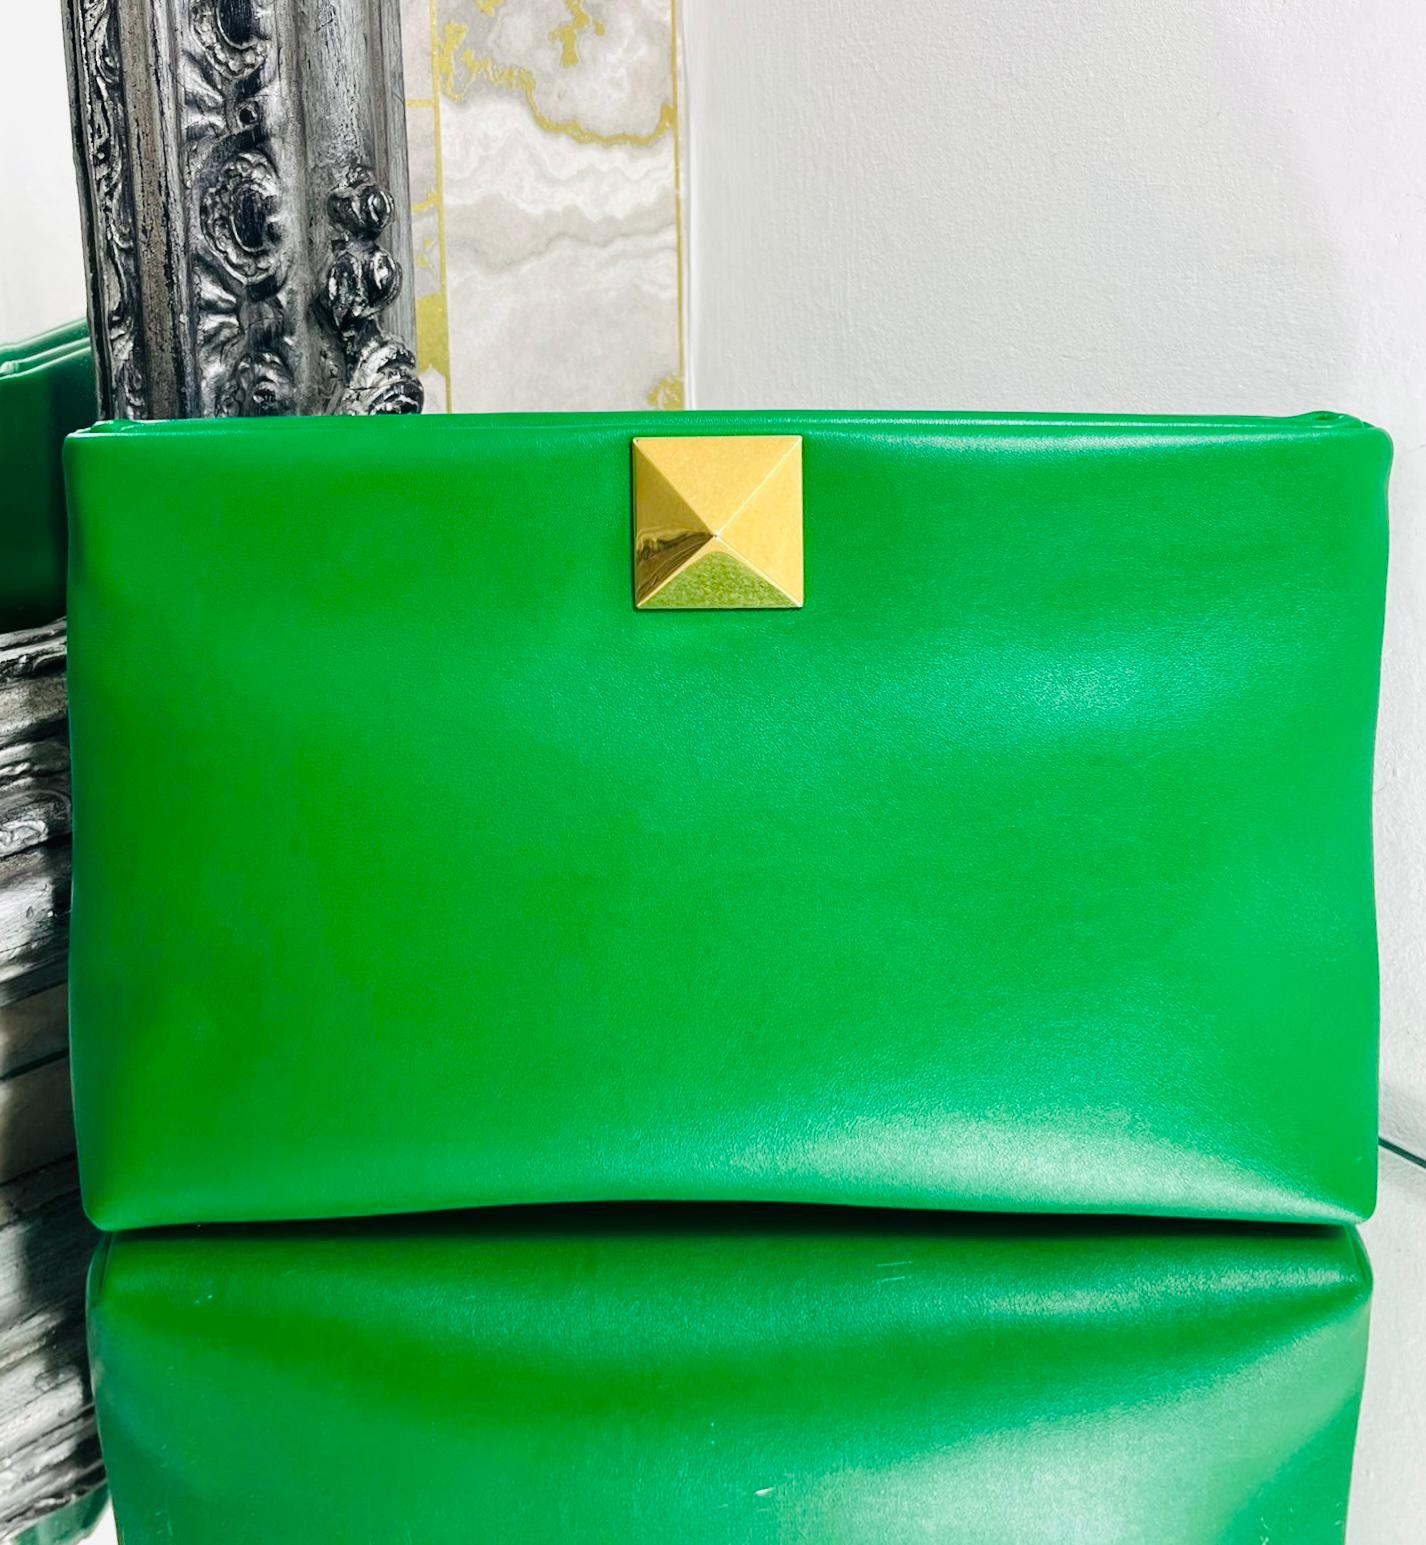 Valentino One Stud Leder-Clutch mit Nieten

Grüne Clutch-Bag mit dem charakteristischen goldenen, übergroßen Rockstud auf der Vorderseite.

Mit Druckknopfverschluss an der Oberseite, der zu einem Innenraum aus Leder mit einer Reißverschlusstasche